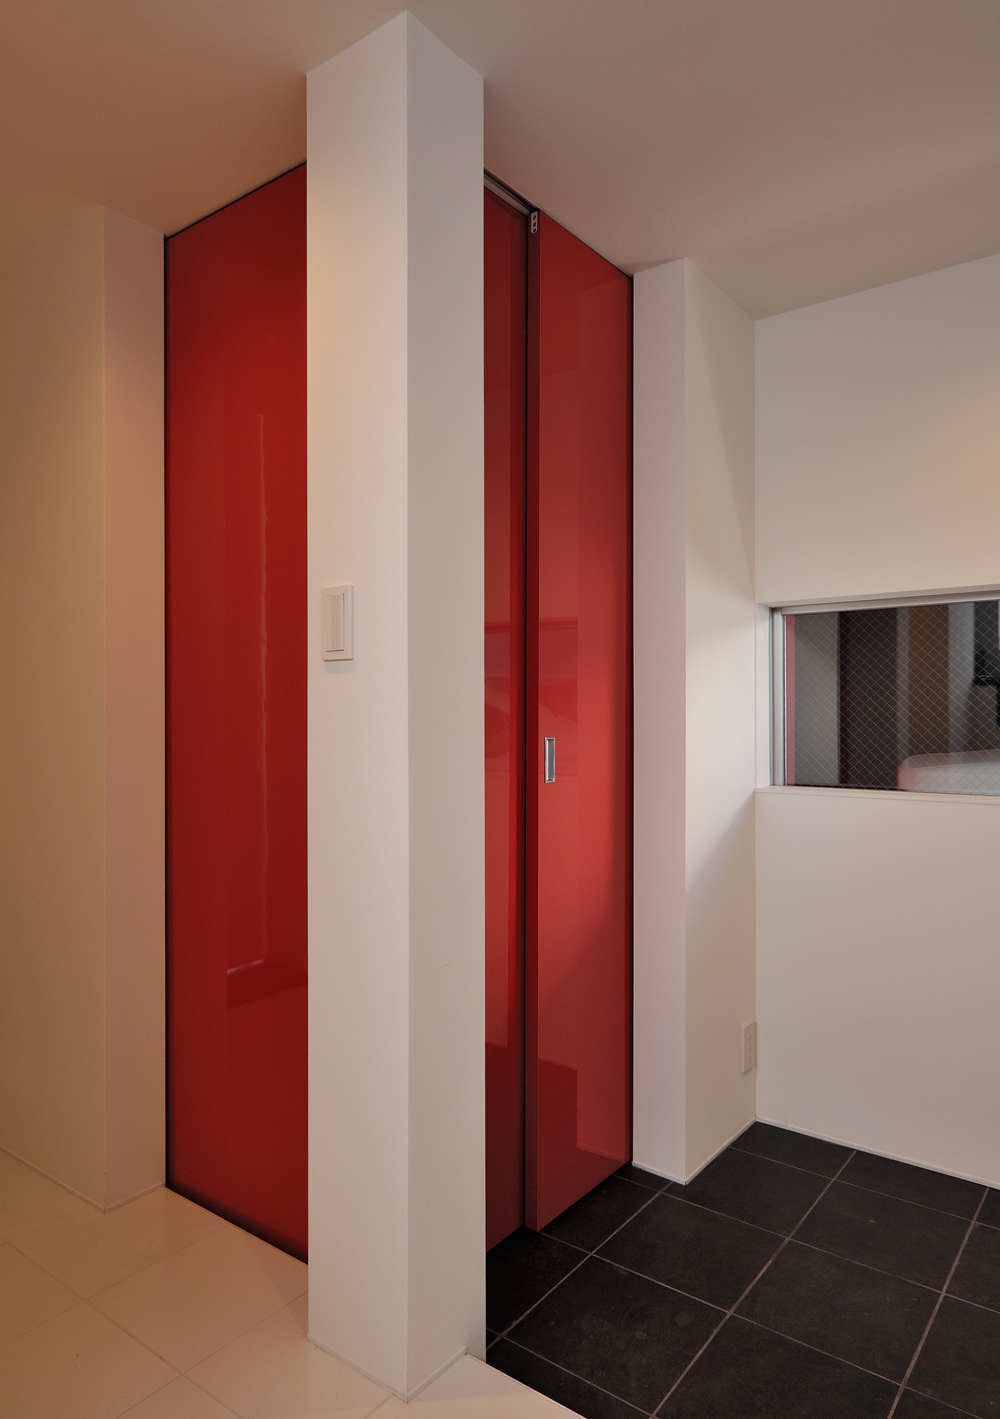 白と黒のタイルの床材に、この家のシンボルカラーの赤色の扉が個性的な玄関ホール